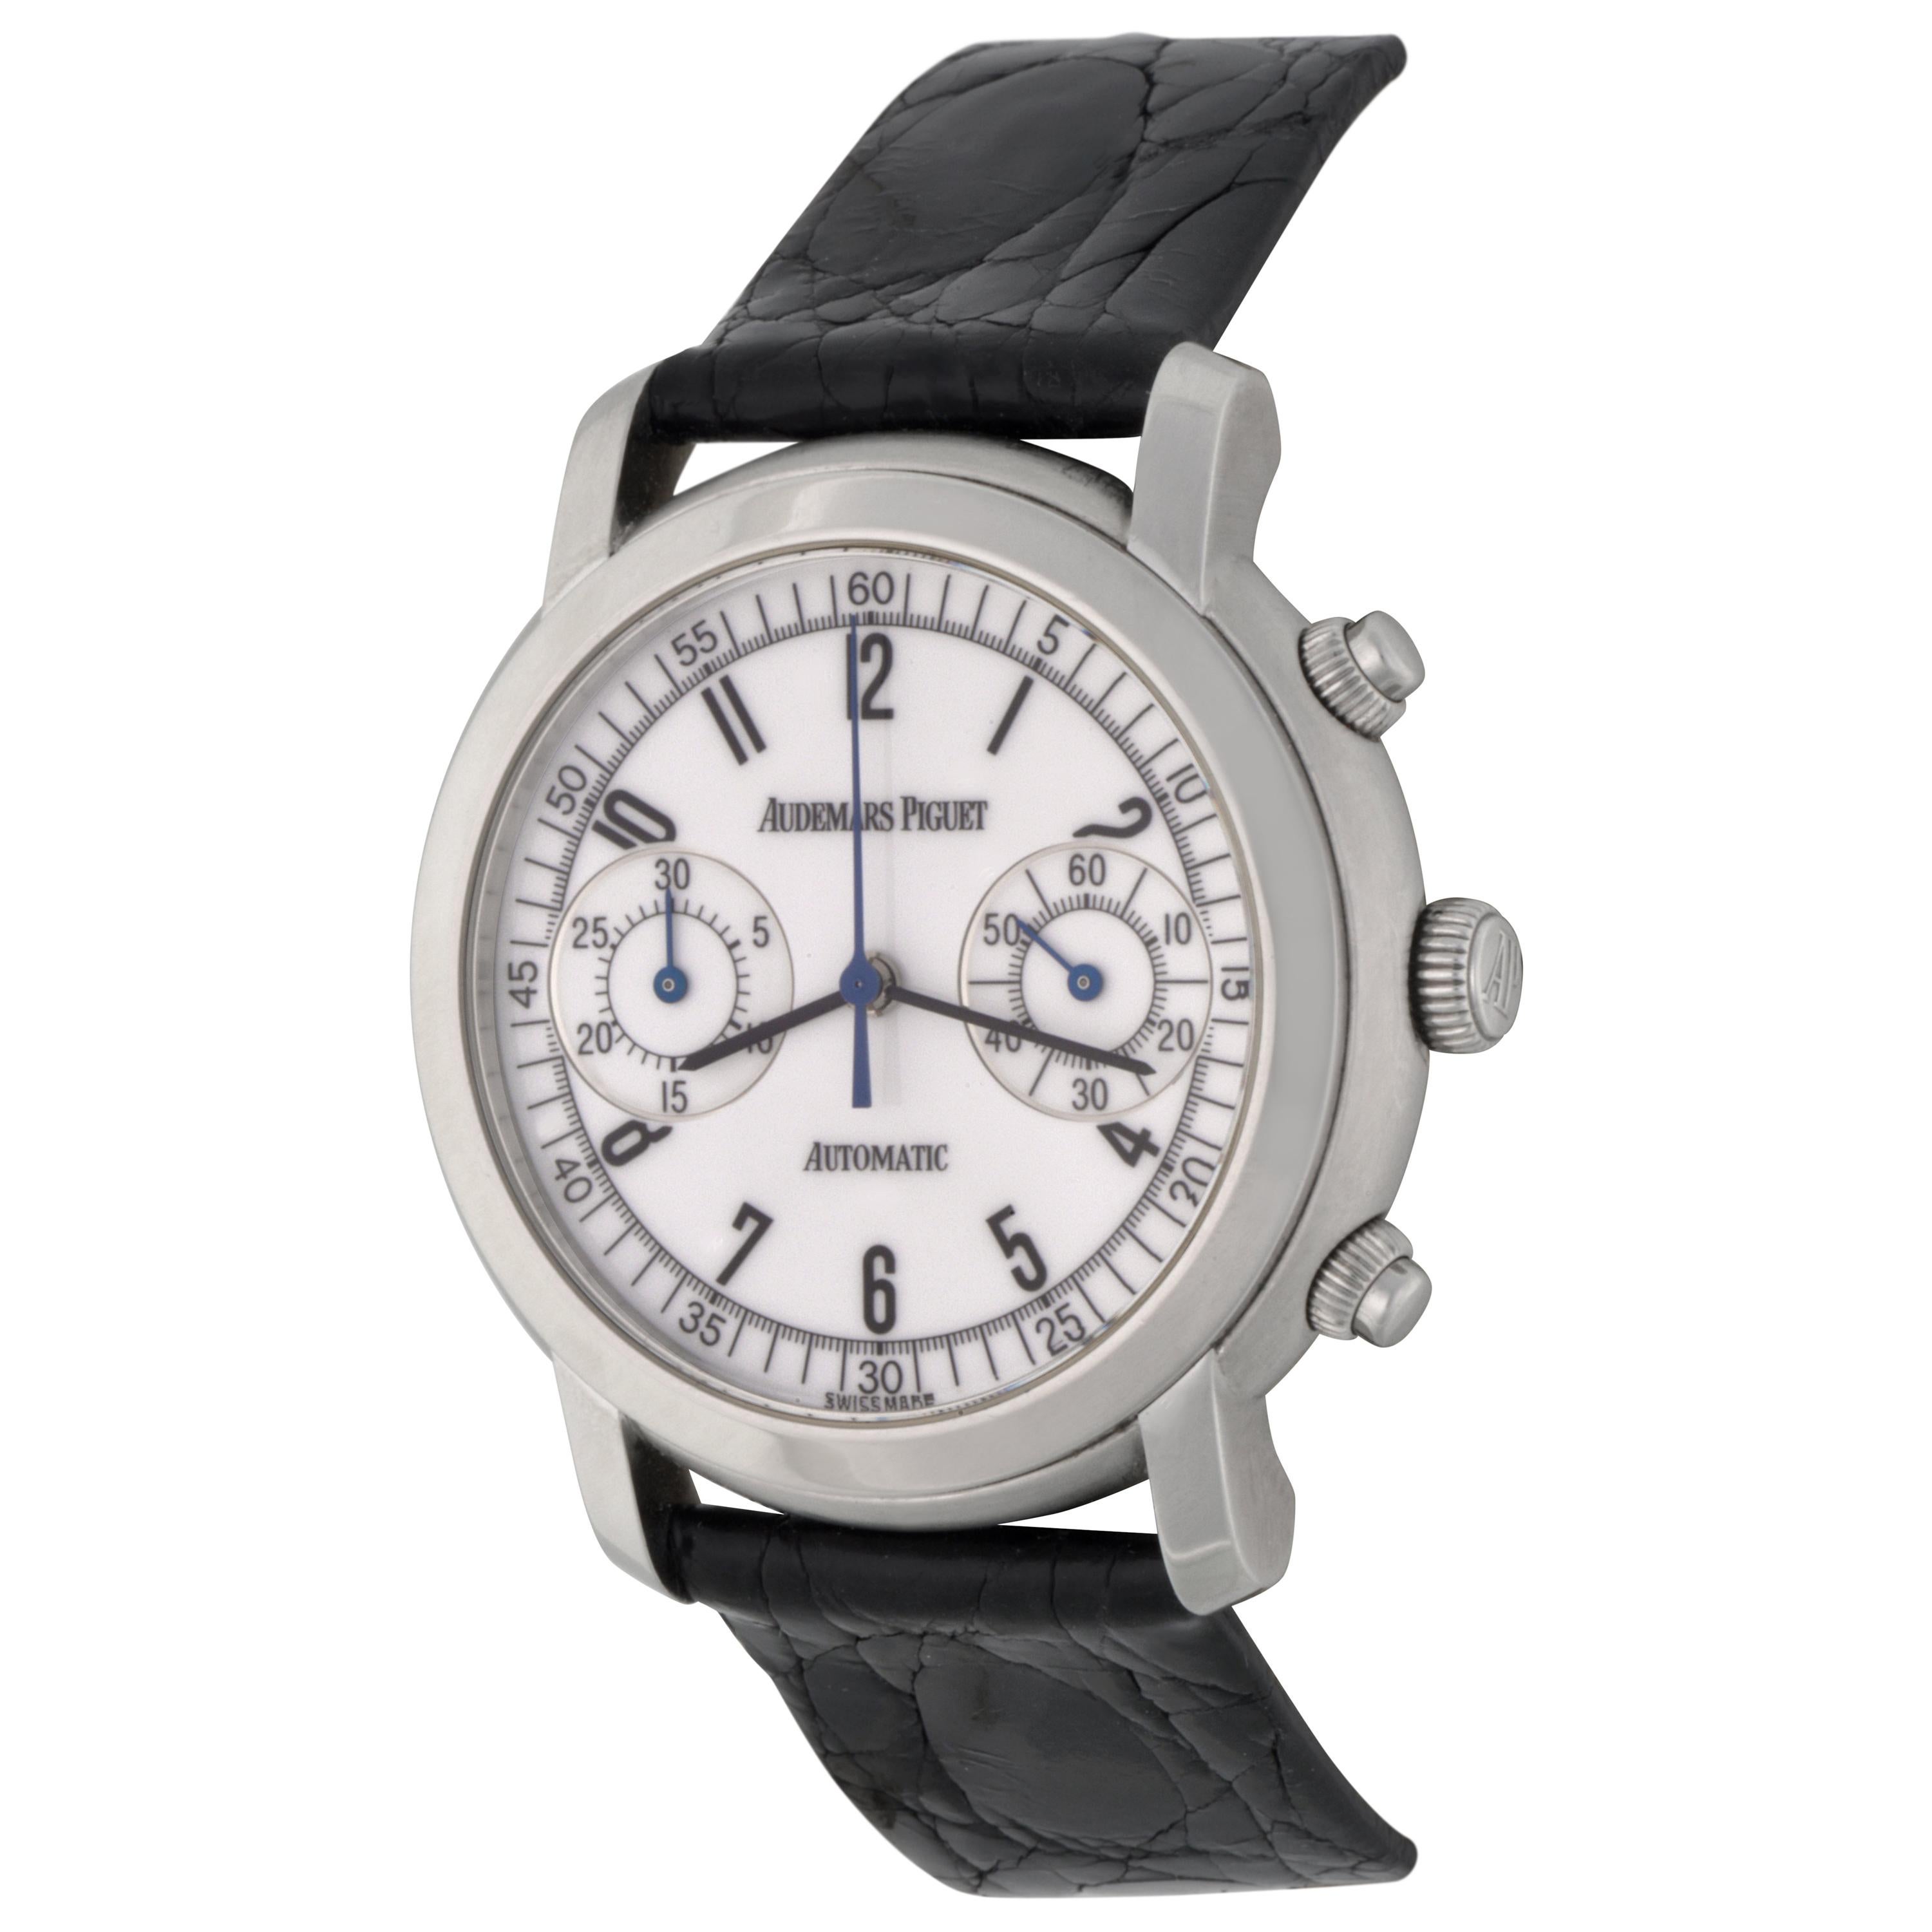 Audemars Piguet Jules Audemars Stainless Steel Chronograph Wristwatch